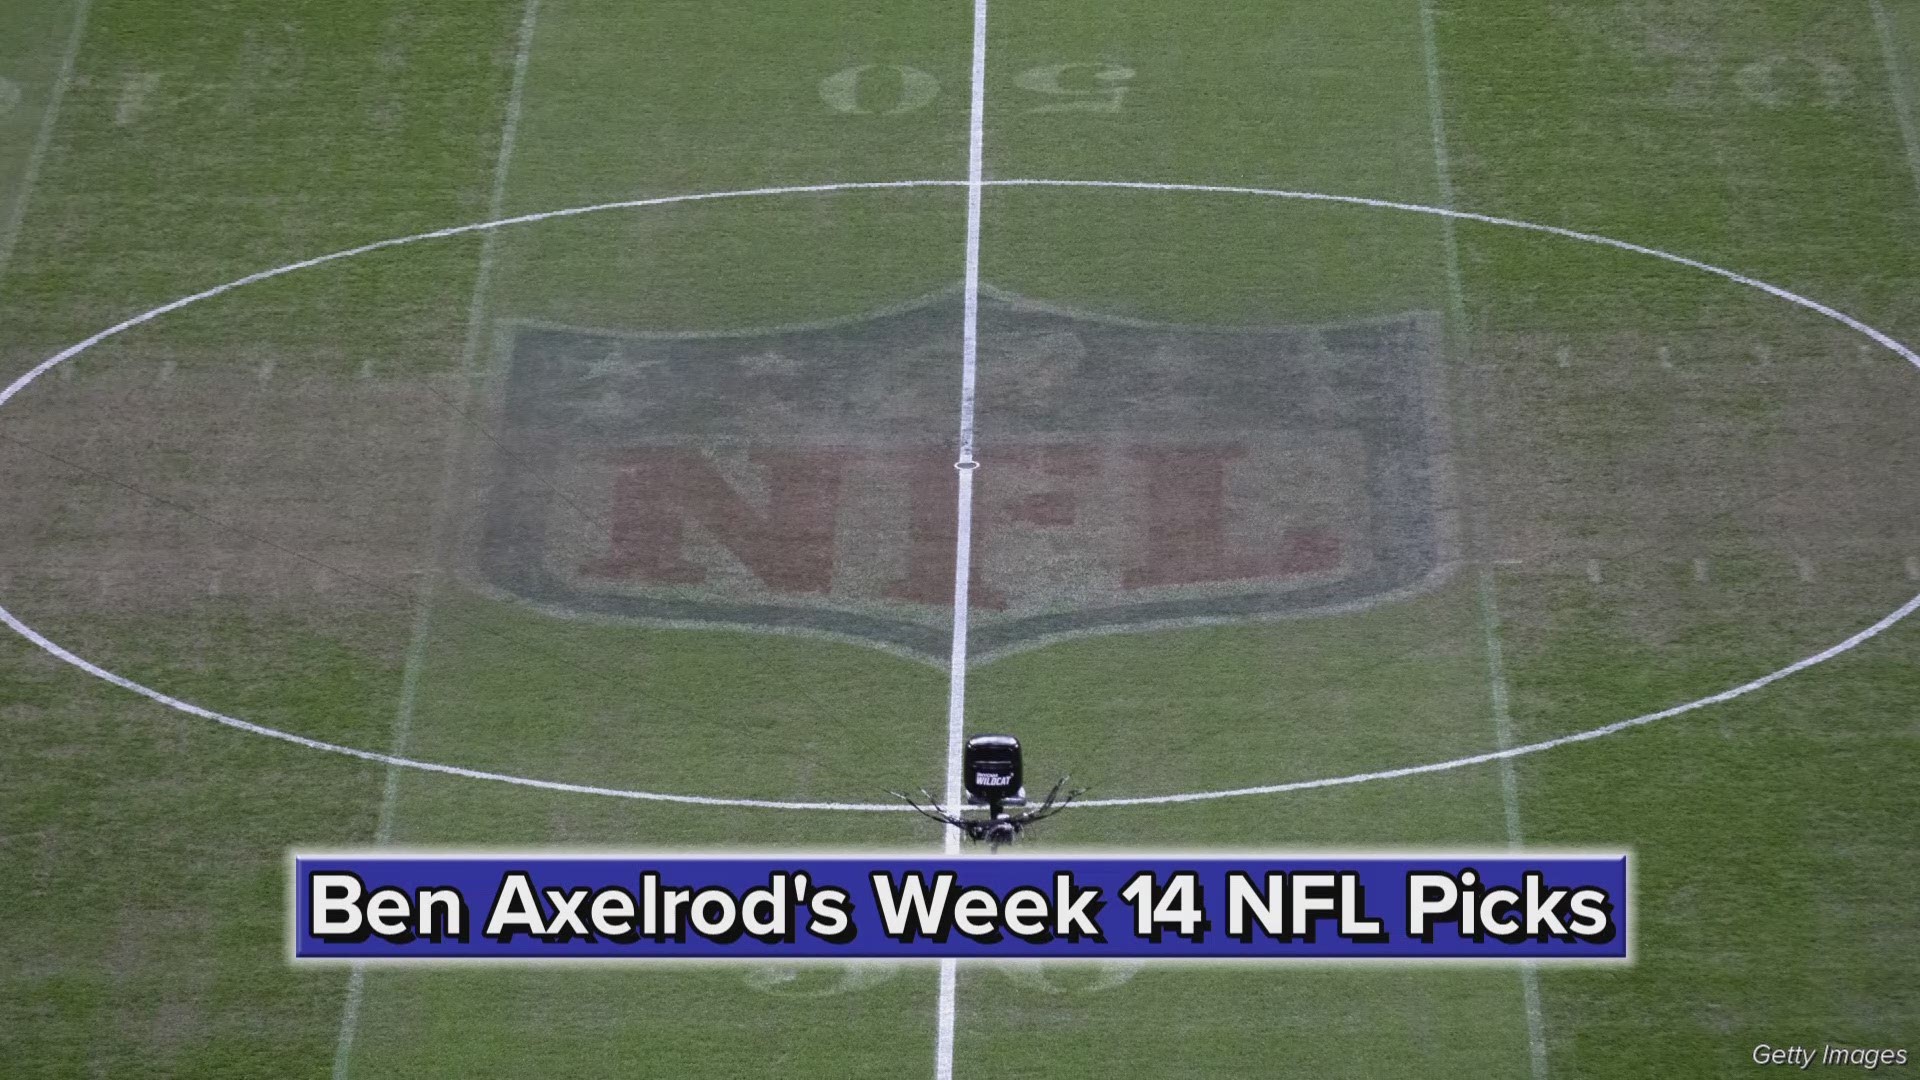 Ben Axelrod's Week 14 NFL Picks: Jaguars cover vs. Titans, Browns upset Panthers